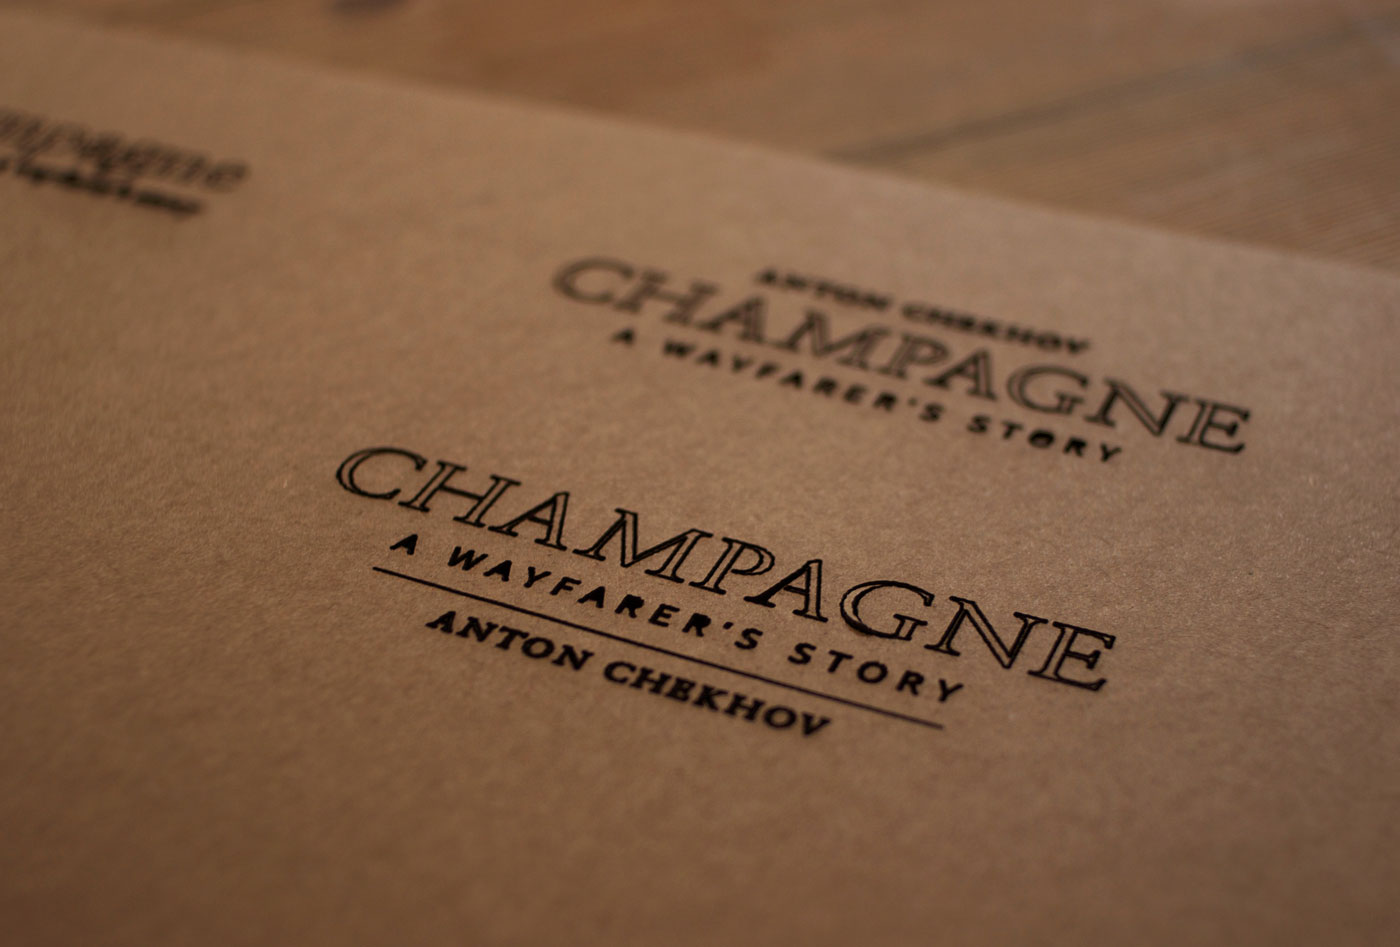 champagne box lasercutting process